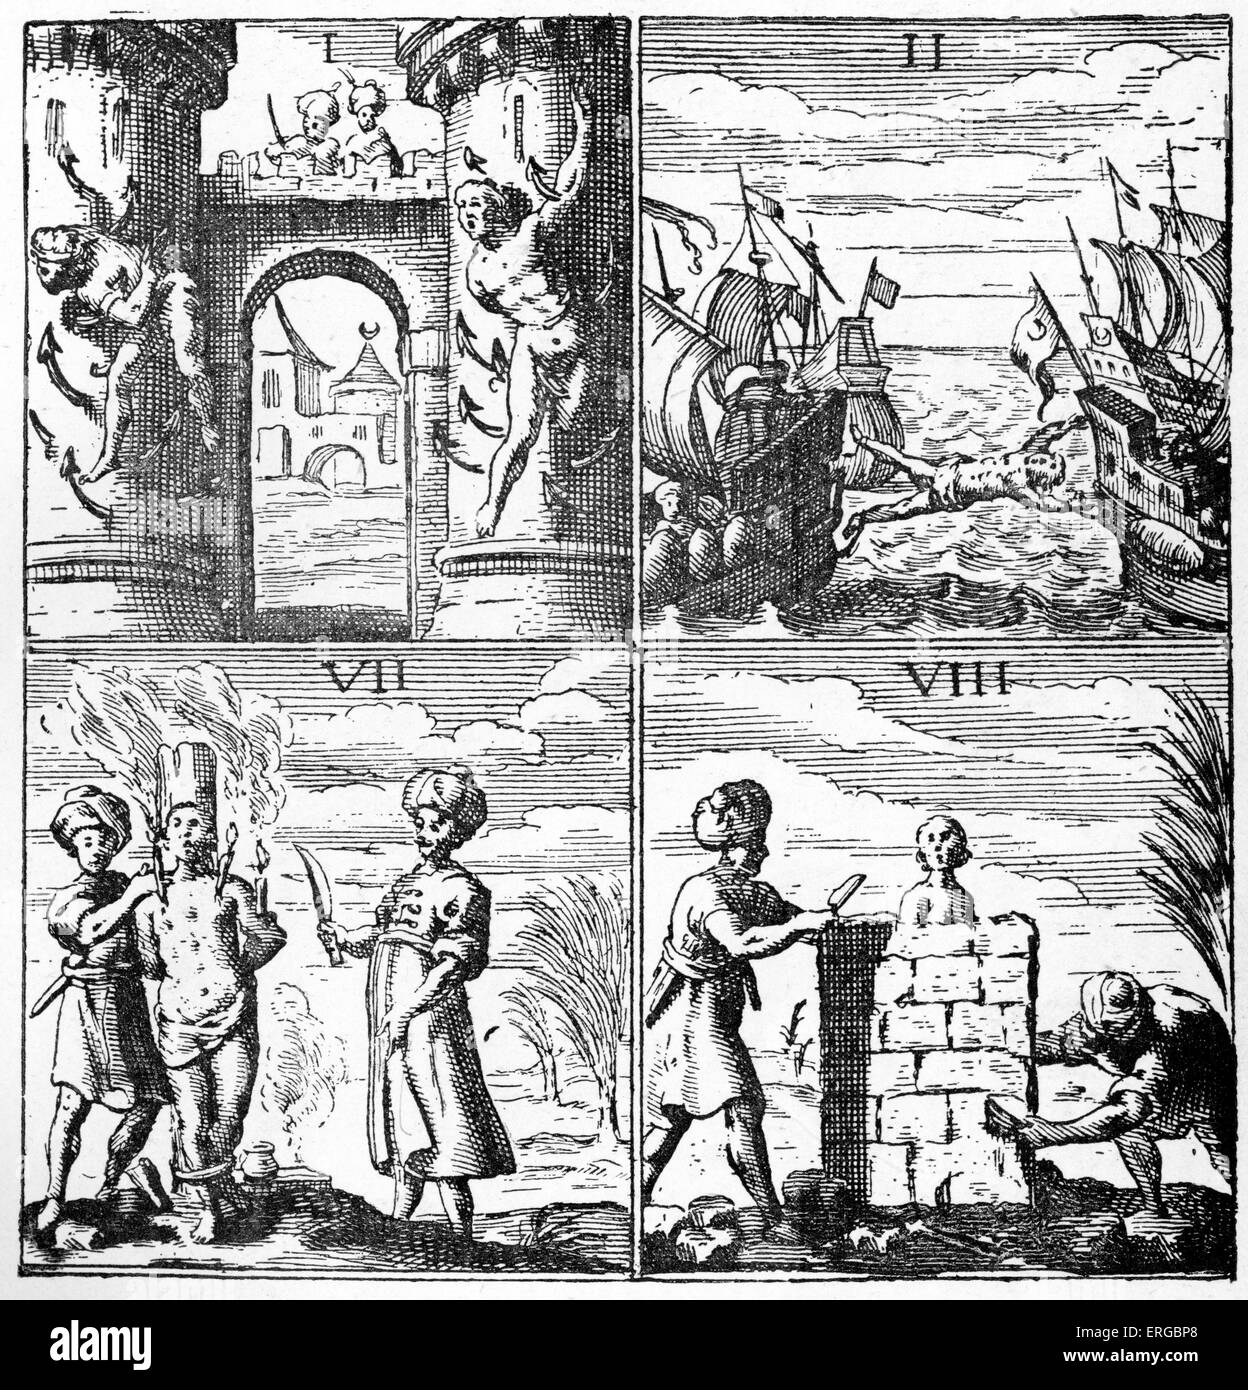 Christliche Sklaven gefoltert in Algerien (17. Jahrhundert Abbildung). Algerien war damals Teil des Osmanischen Reiches. Bildunterschrift lautet: Qualen der Sklaven, von Histoire de Barbarie 1637. Stockfoto